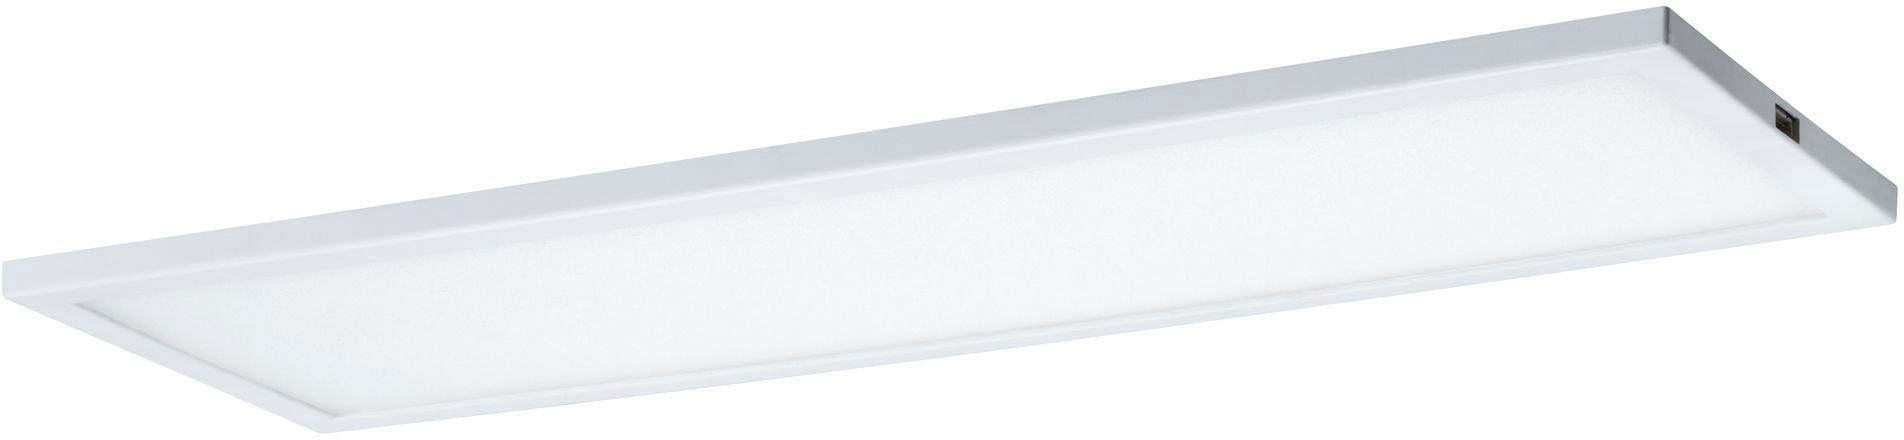 fest integriert, LED Warmweiß, LED Ace Weiß Erweiterung 7,5W Panel Erweiterung, Unterschrankleuchte Paulmann 10x30cm 10x30cm LED Weiß Panel 7,5W Ace